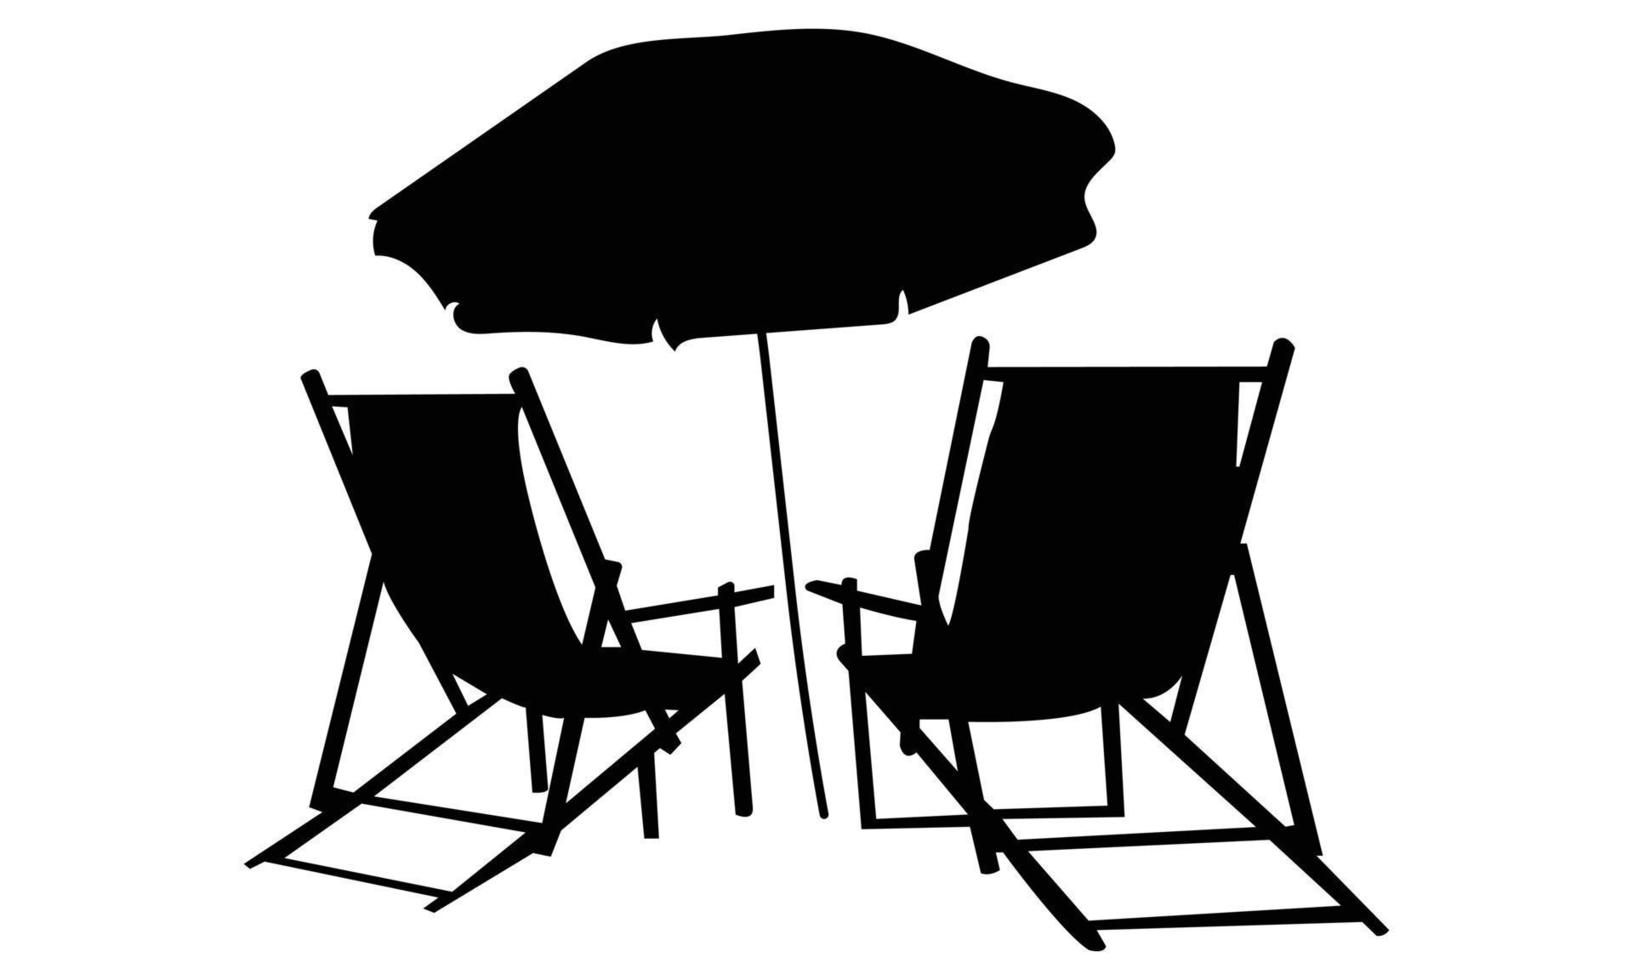 siluetas de sillas de playa sobre fondo blanco vector